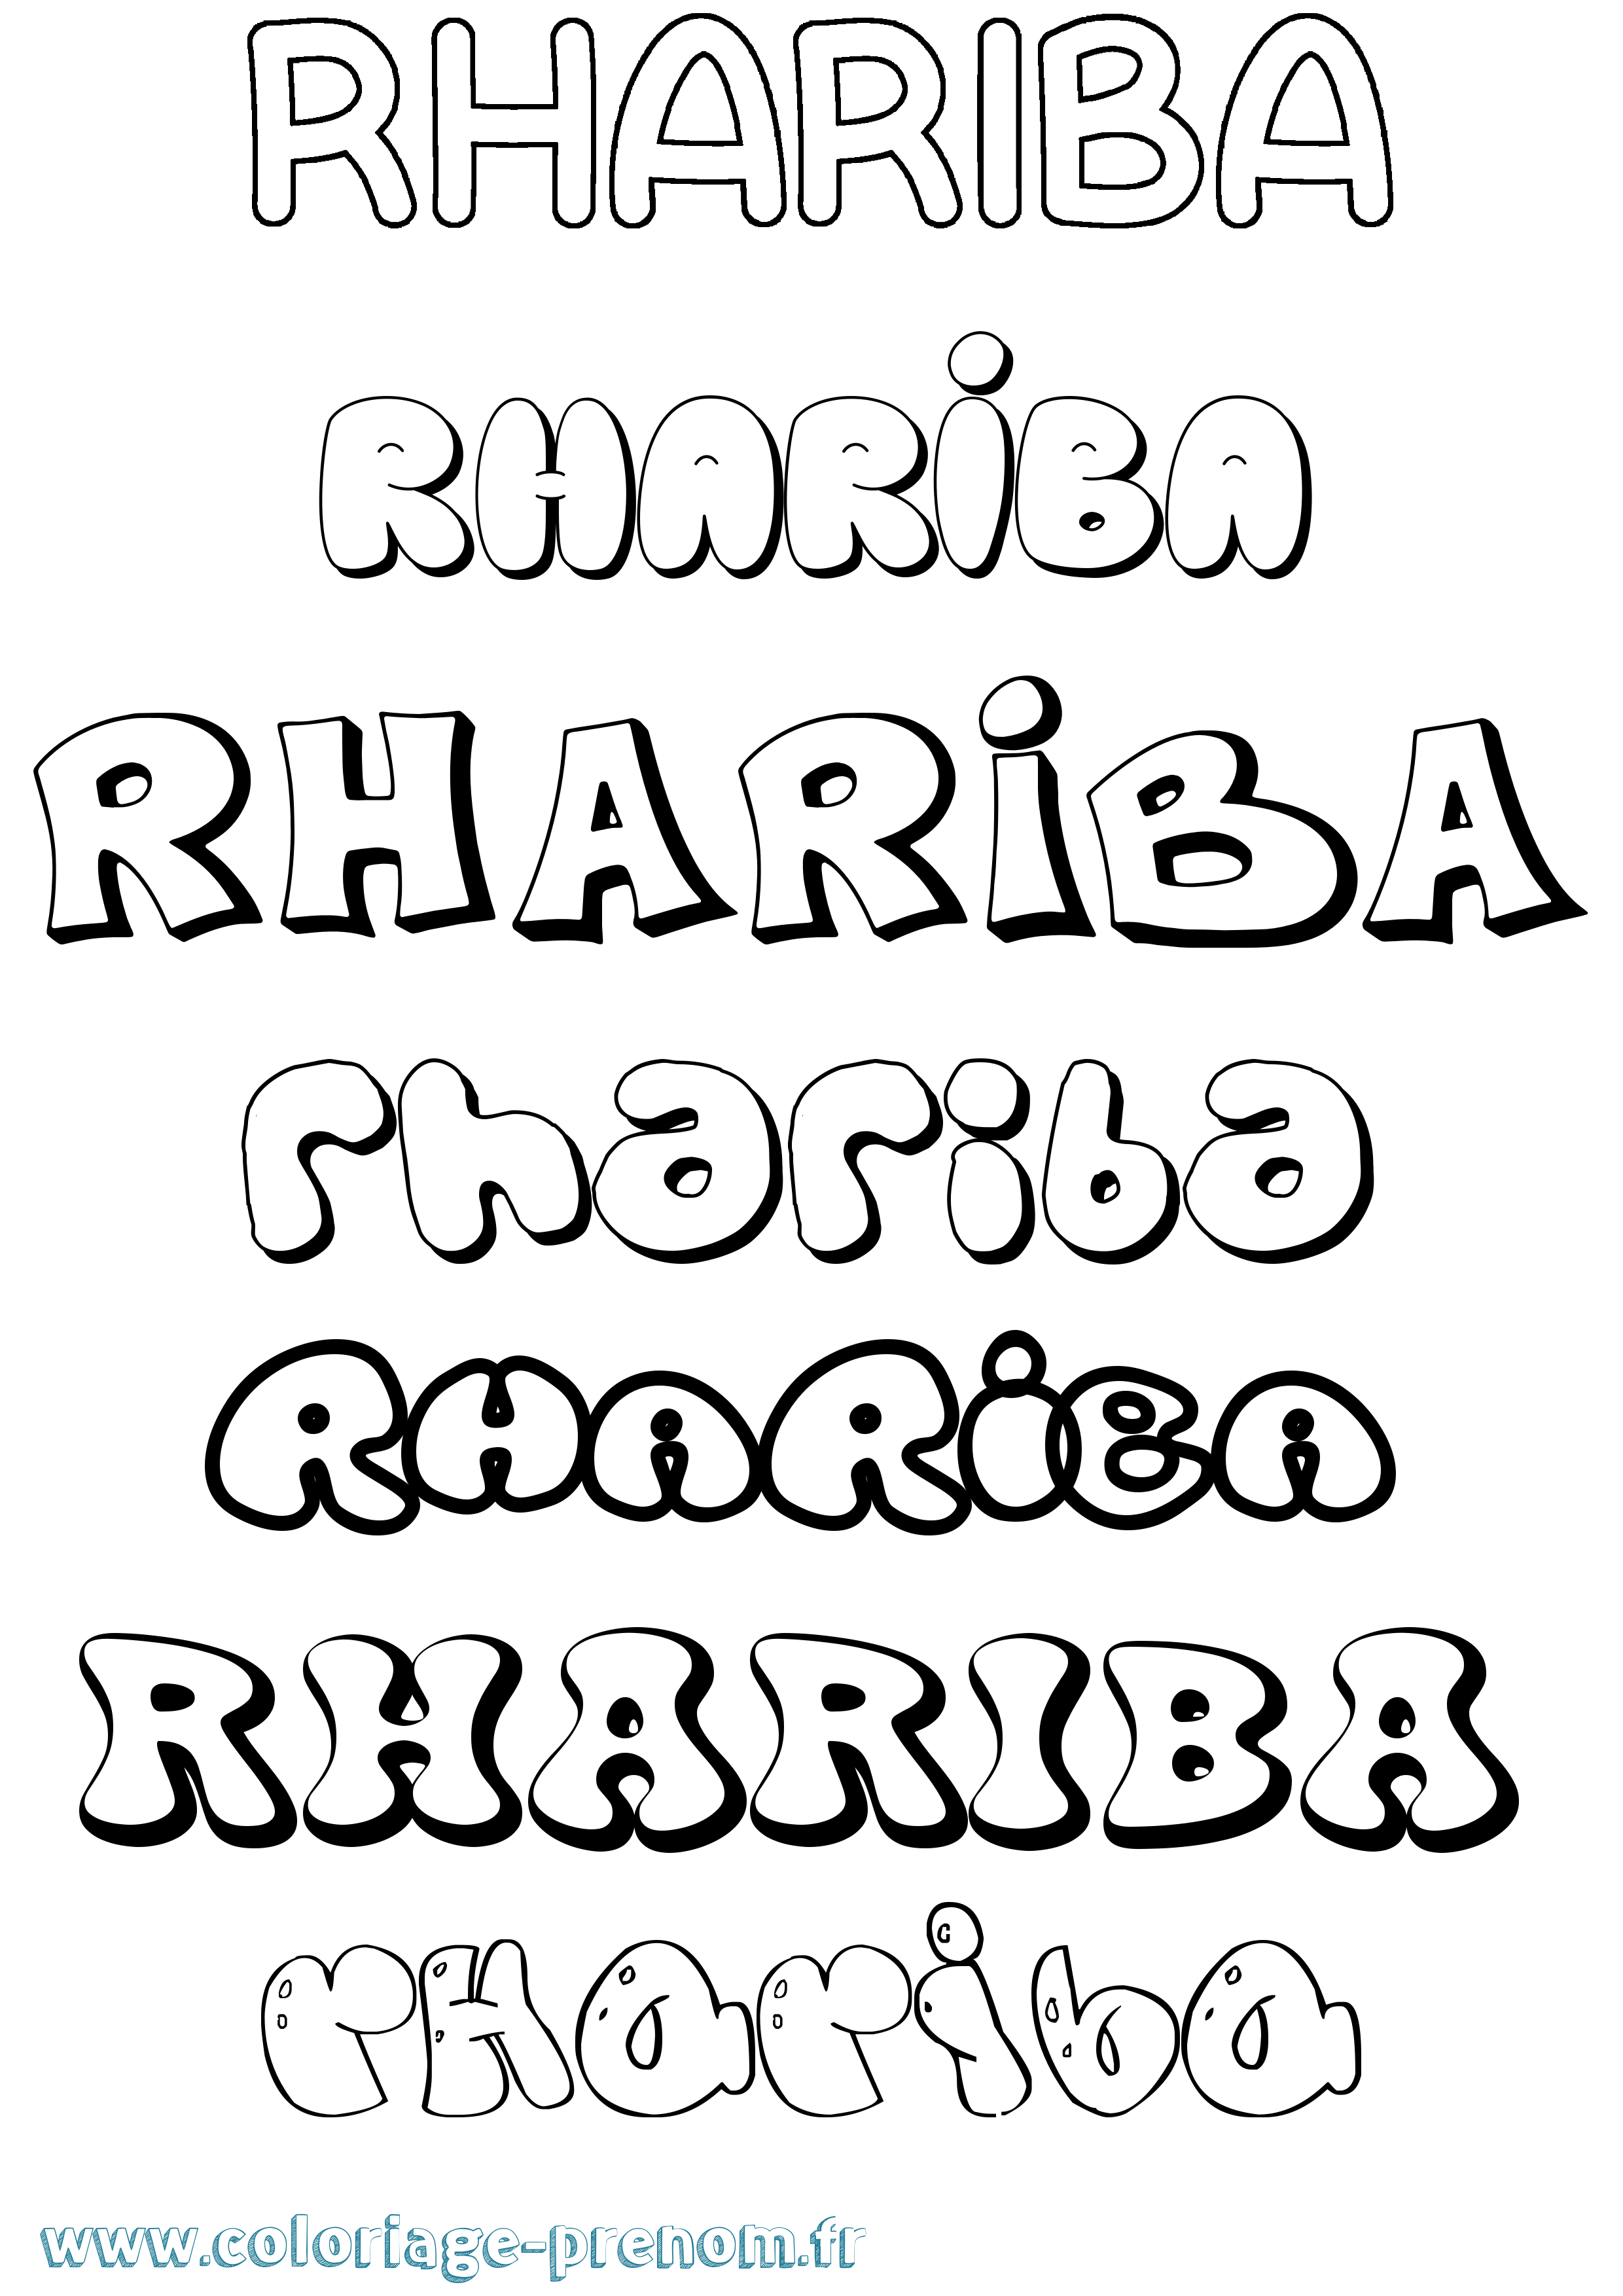 Coloriage prénom Rhariba Bubble